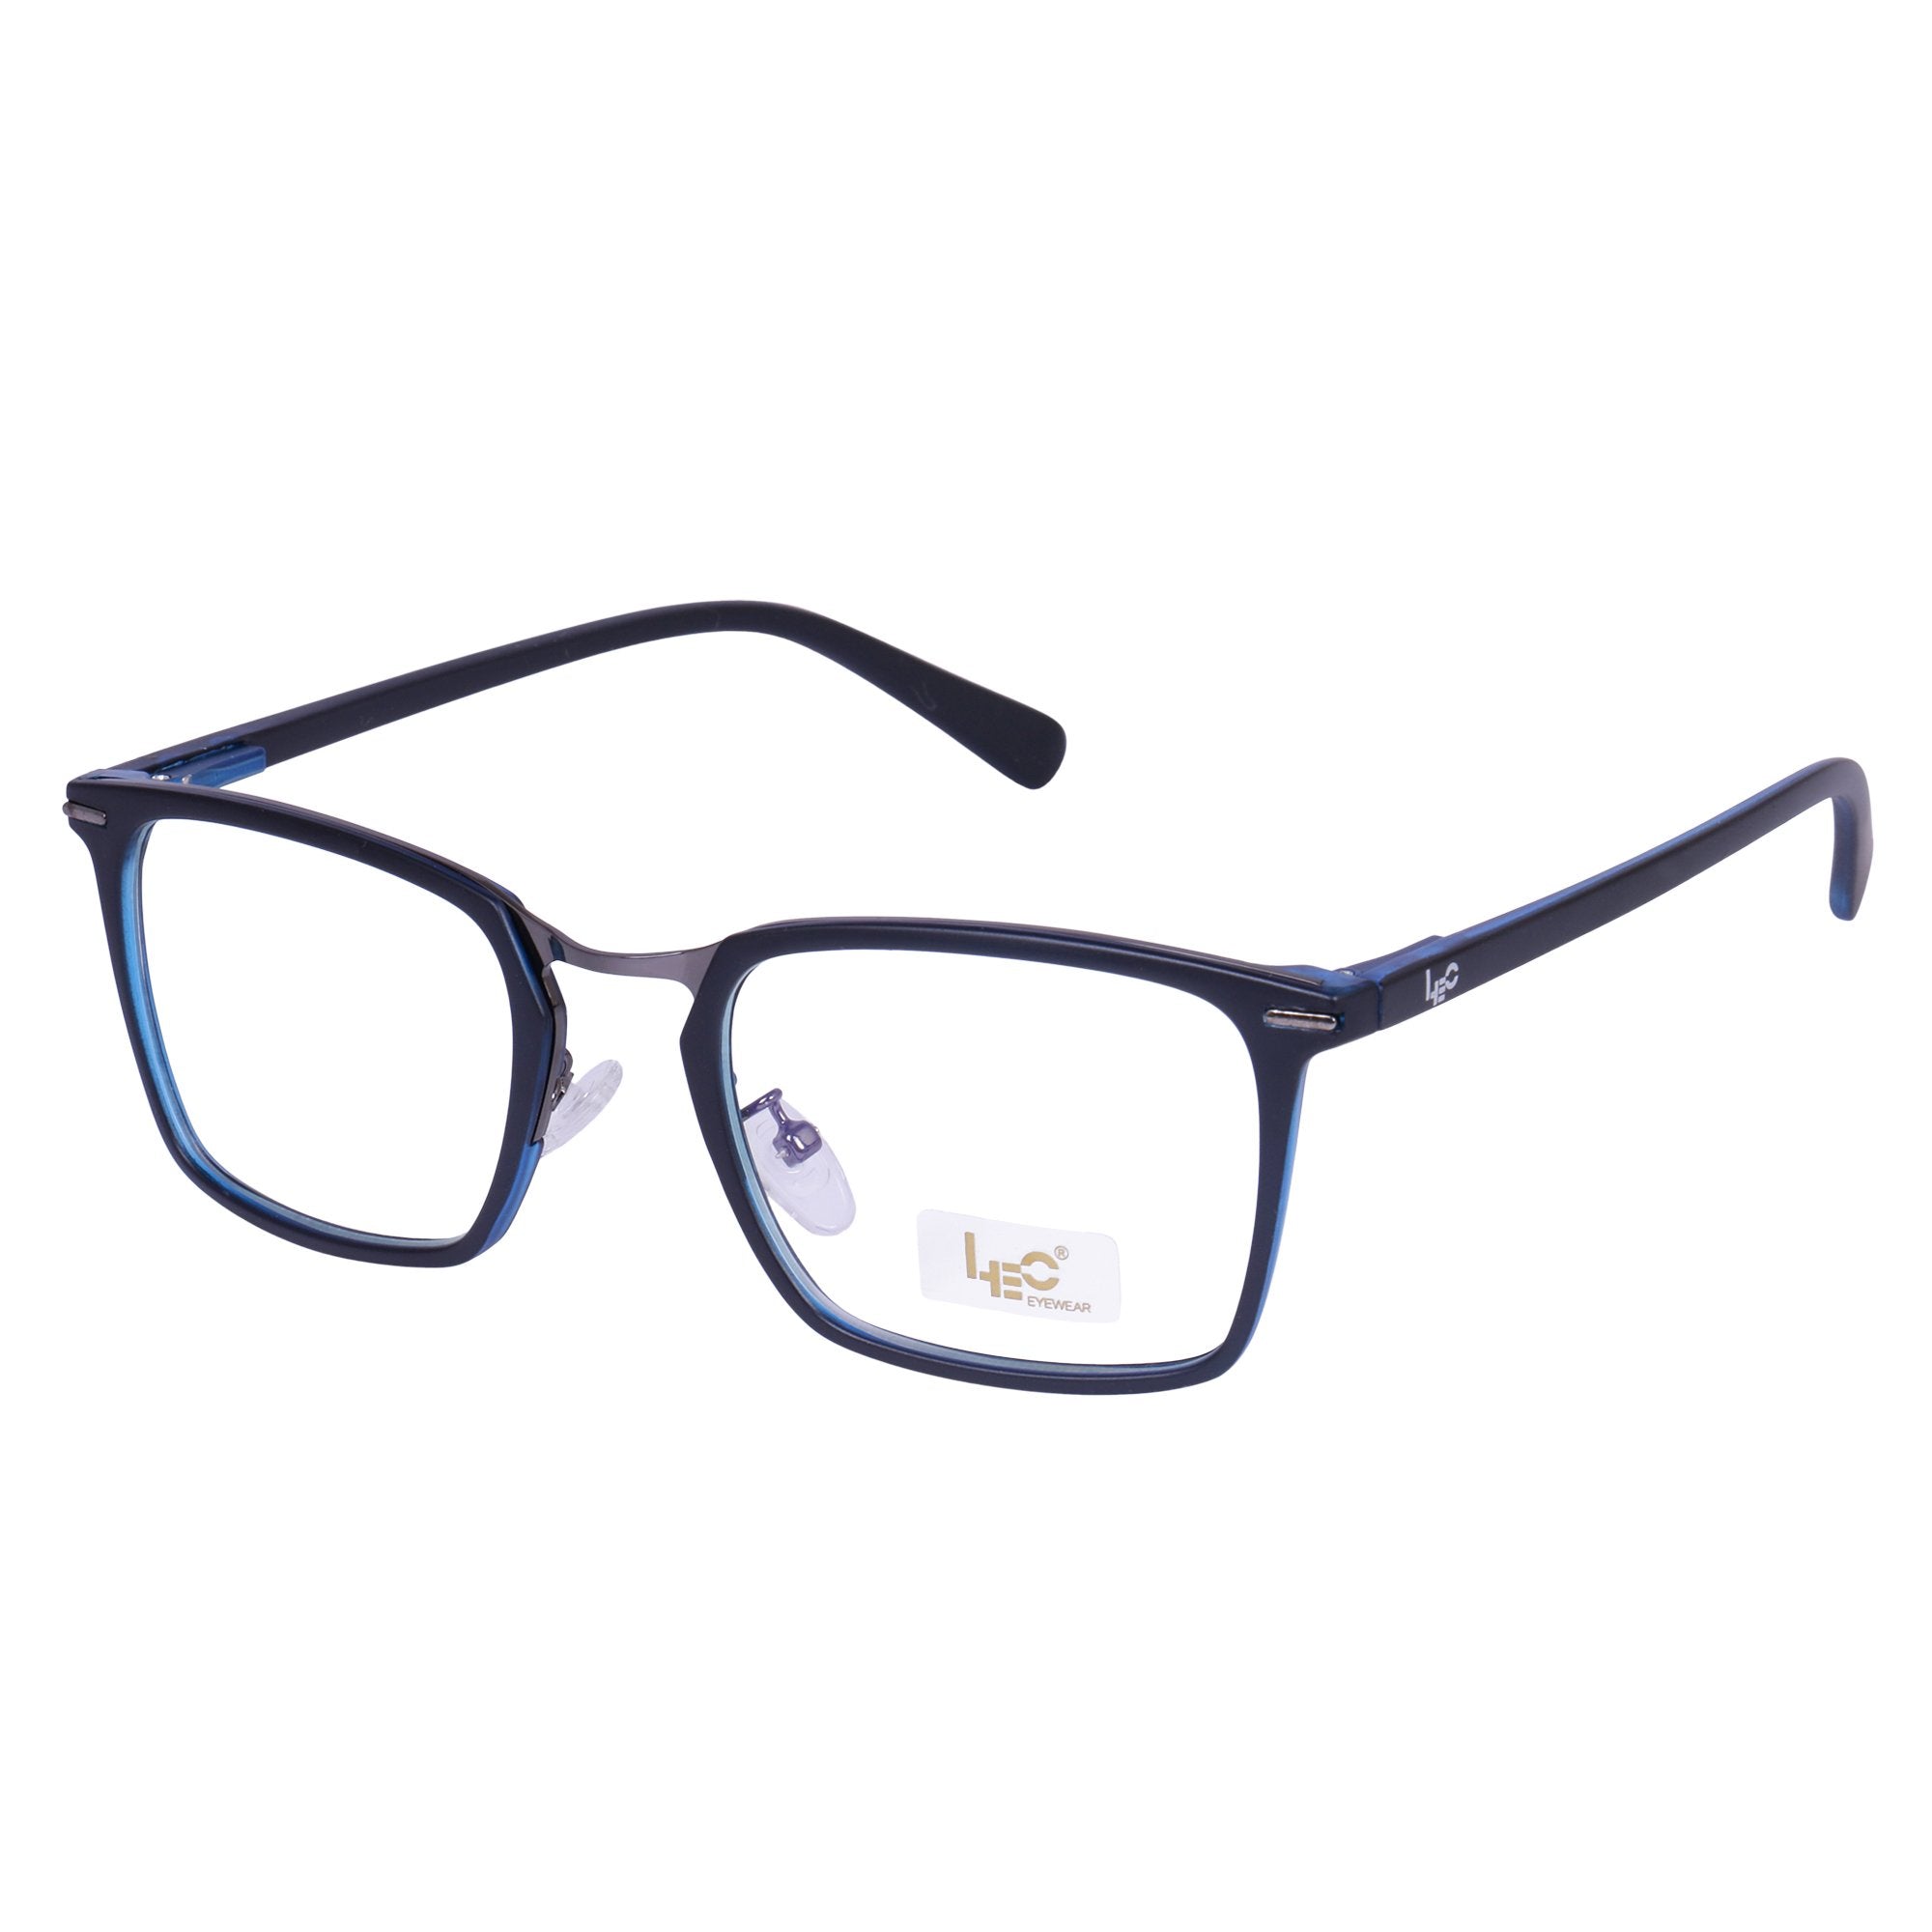 Black & Blue Square Rimmed Eyeglasses - L2755